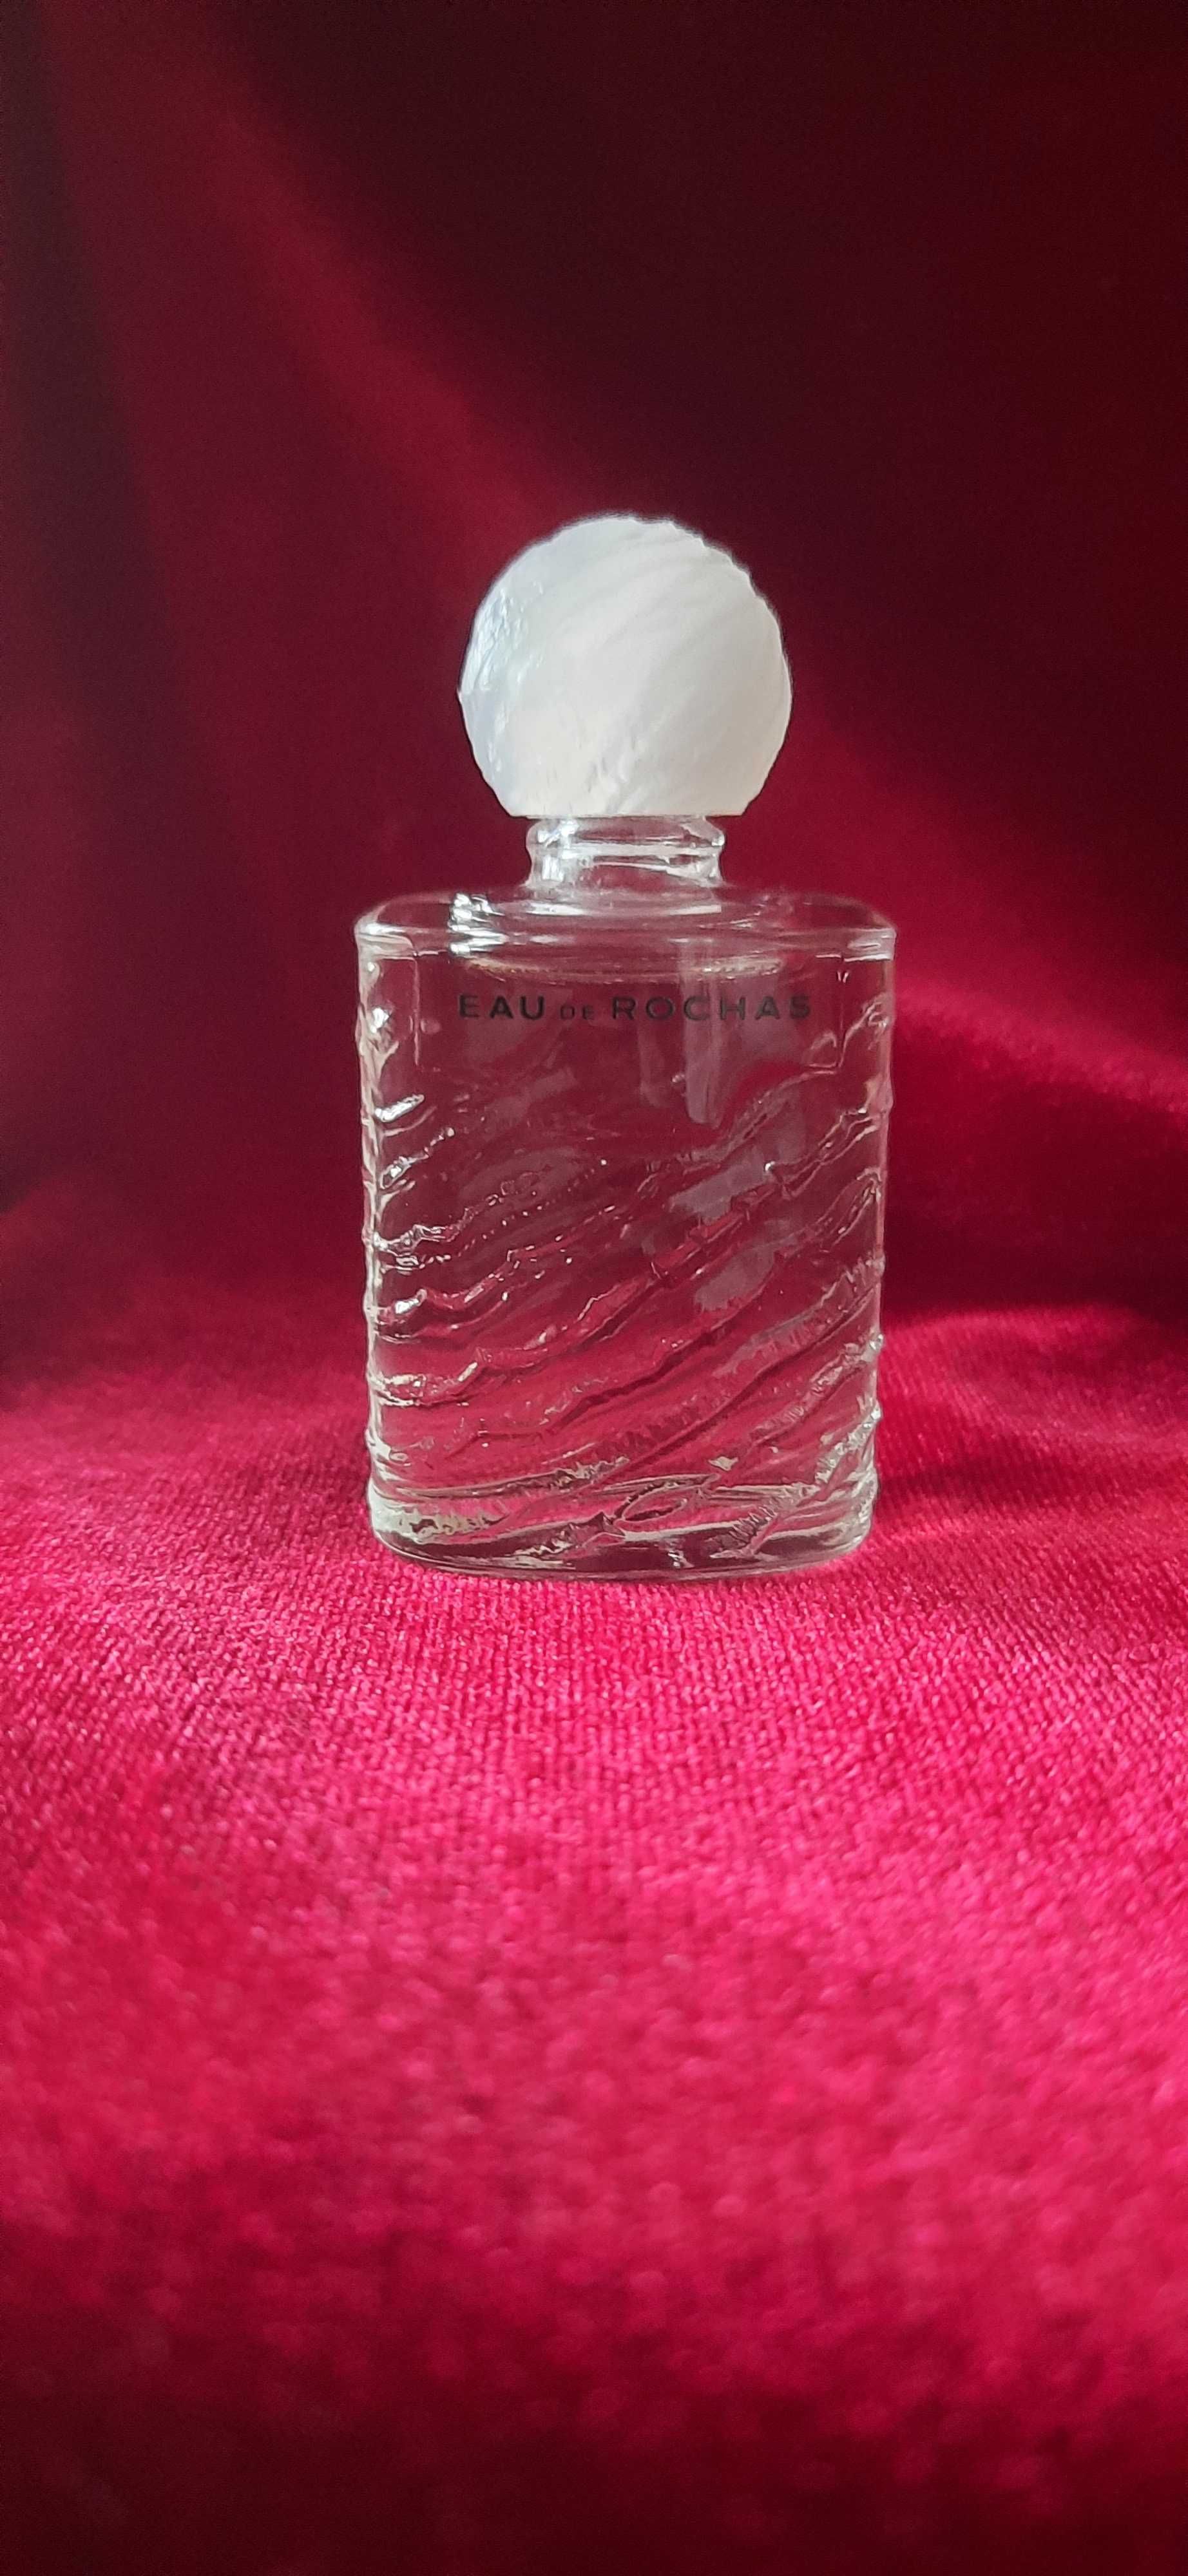 Mini perfume EAU DE ROCHAS Eau de toilette 10 ml. Vintage